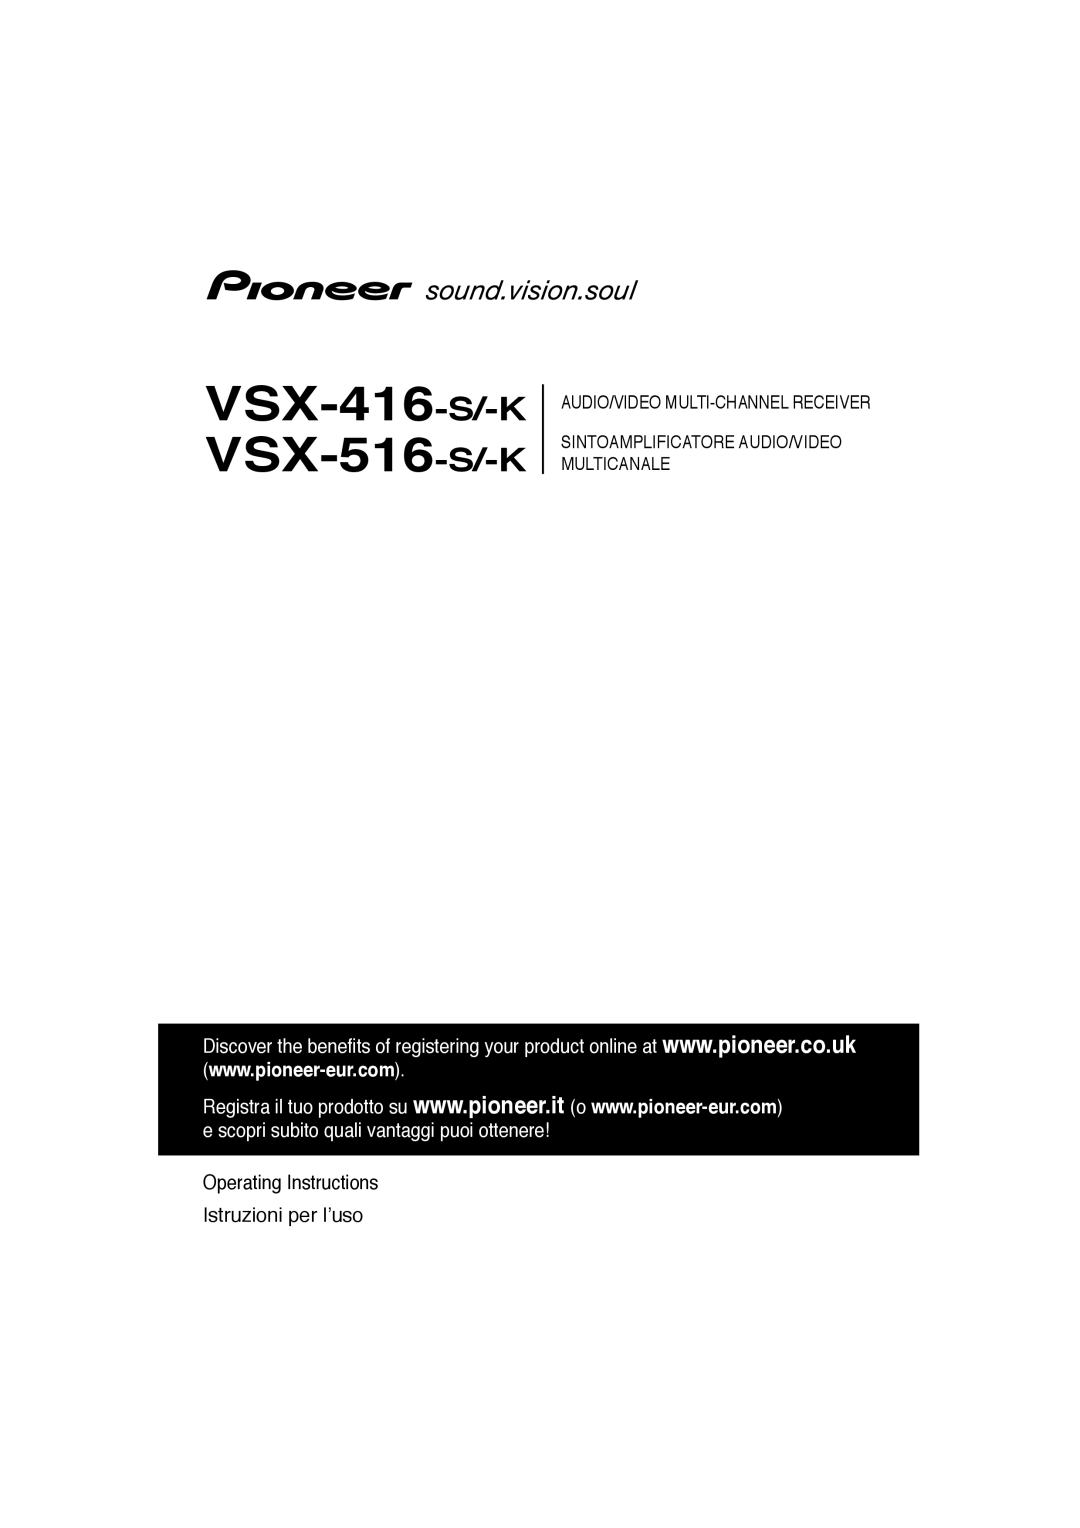 Pioneer VSX-516-K, VSX-416-K manual VSX-416-S/-K VSX-516-S/-K, Operating Instructions Istruzioni per l’uso 